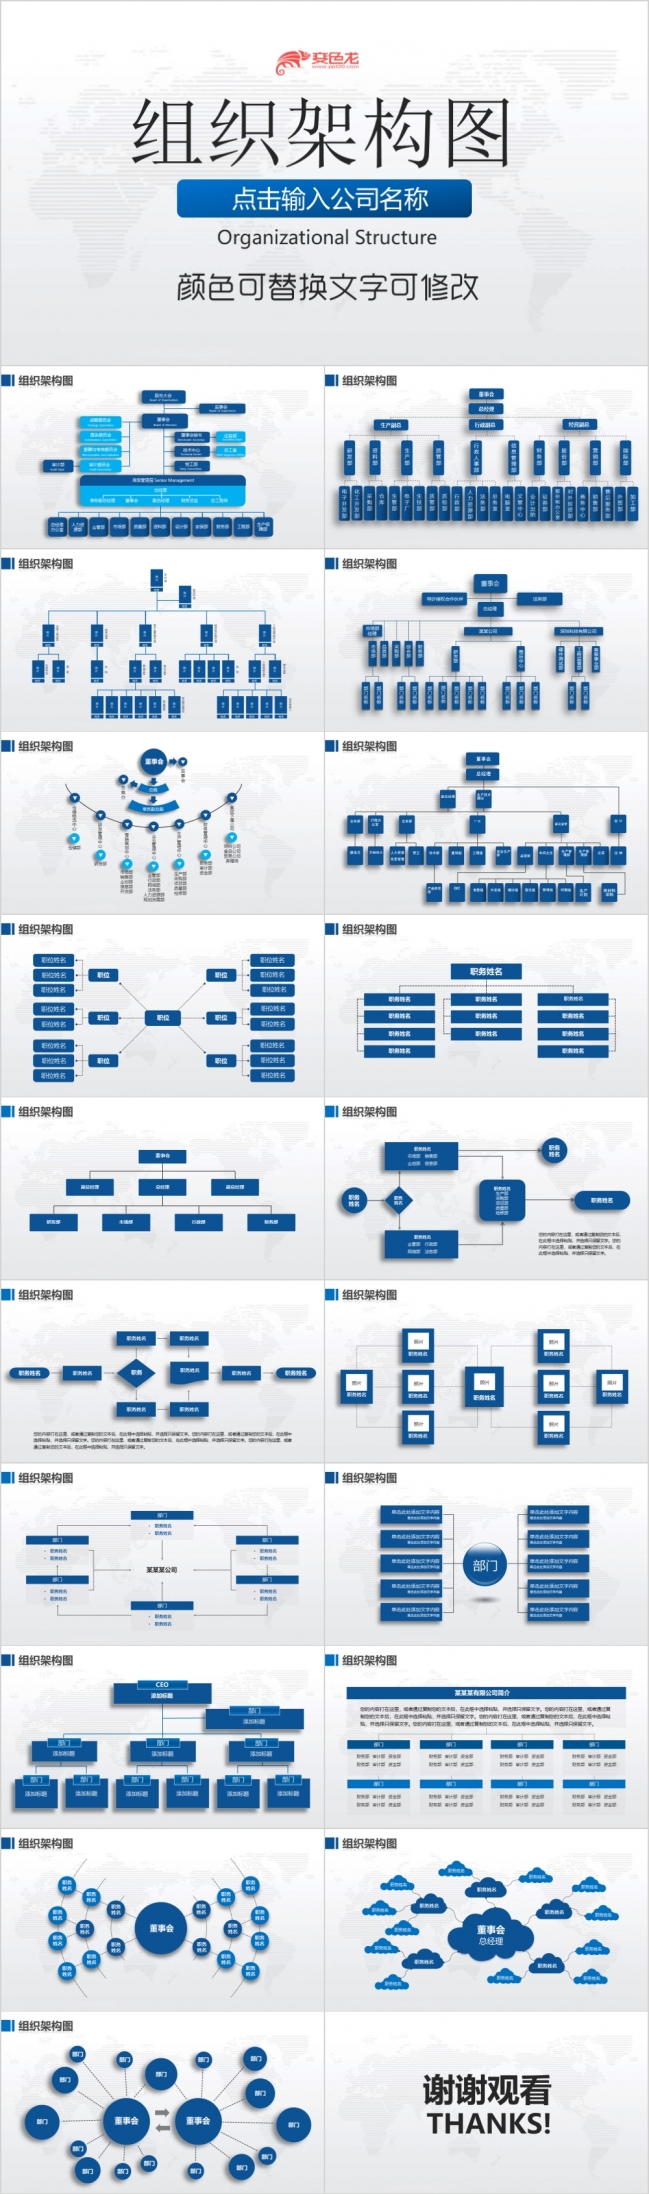 蓝色精品整洁商务人事架构分布流程图ppt模板